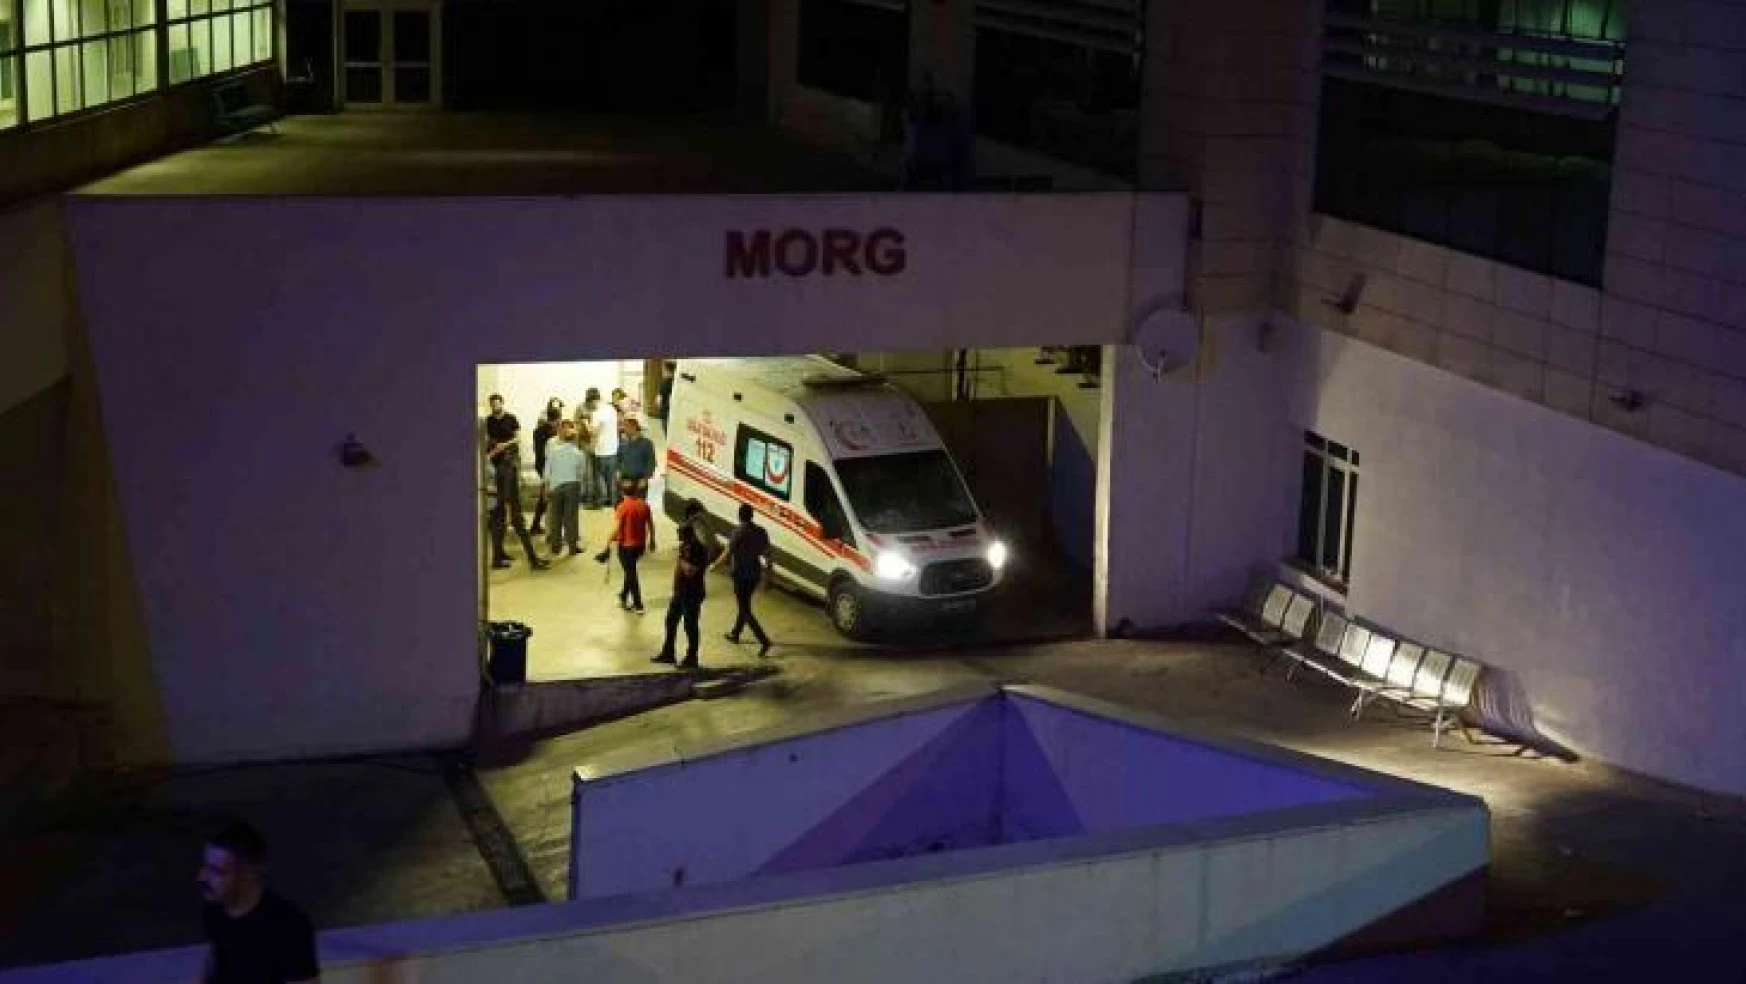 Siirt'te 2 kişiyi öldüren, 3 kişiyi ağır yaralayan zanlı, jandarmanın operasyonuyla yakalandı